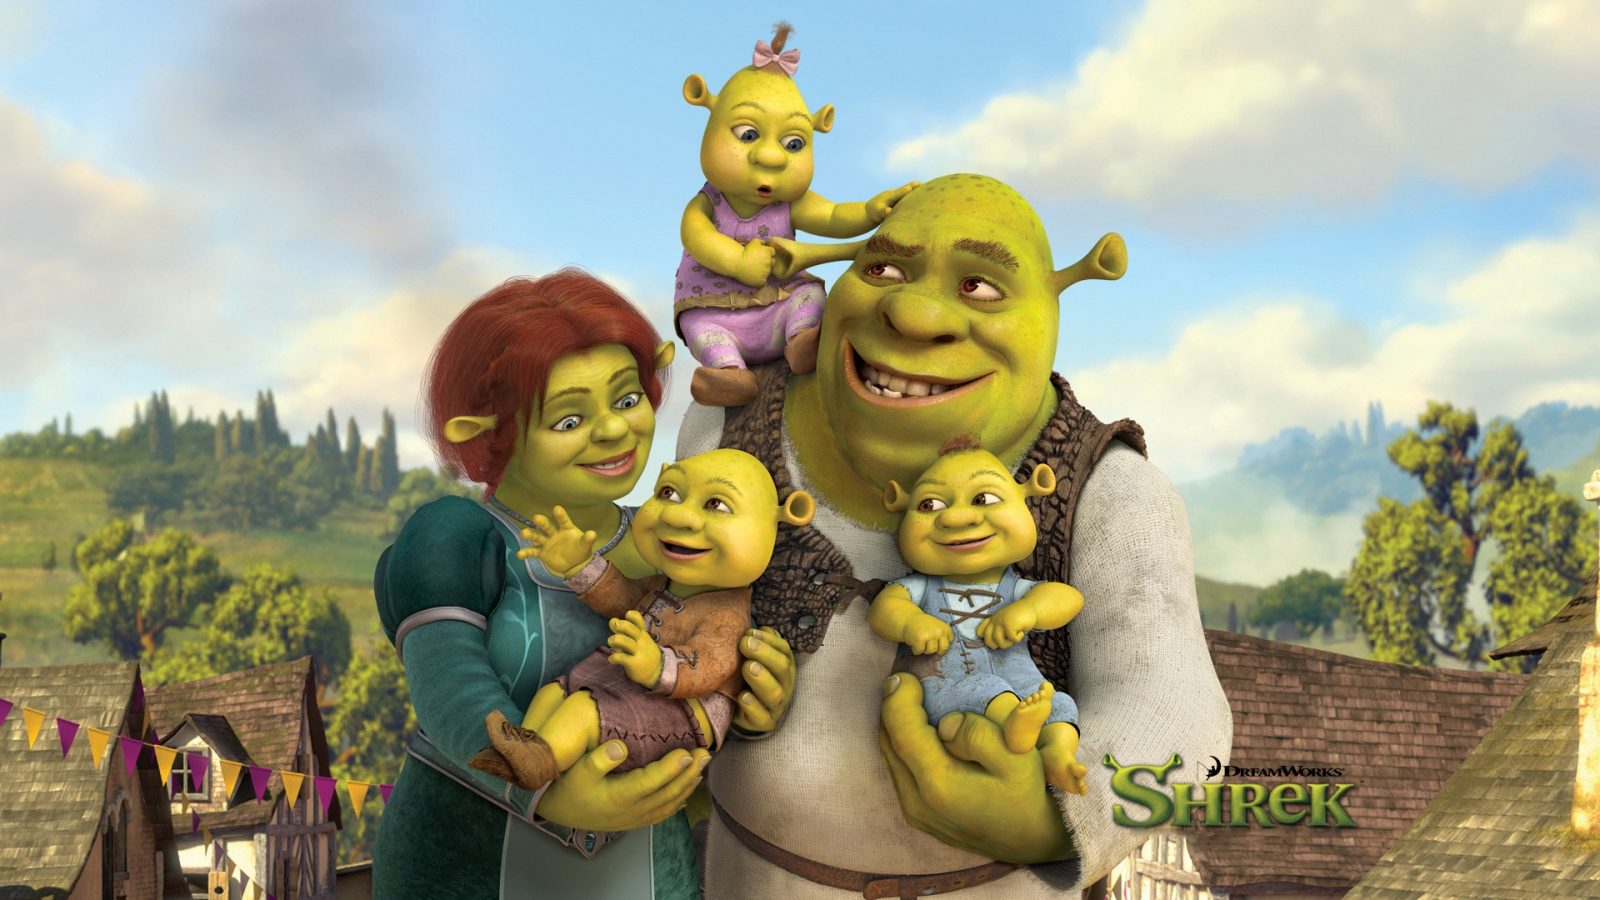 Shreks Family for 1600 x 900 HDTV resolution